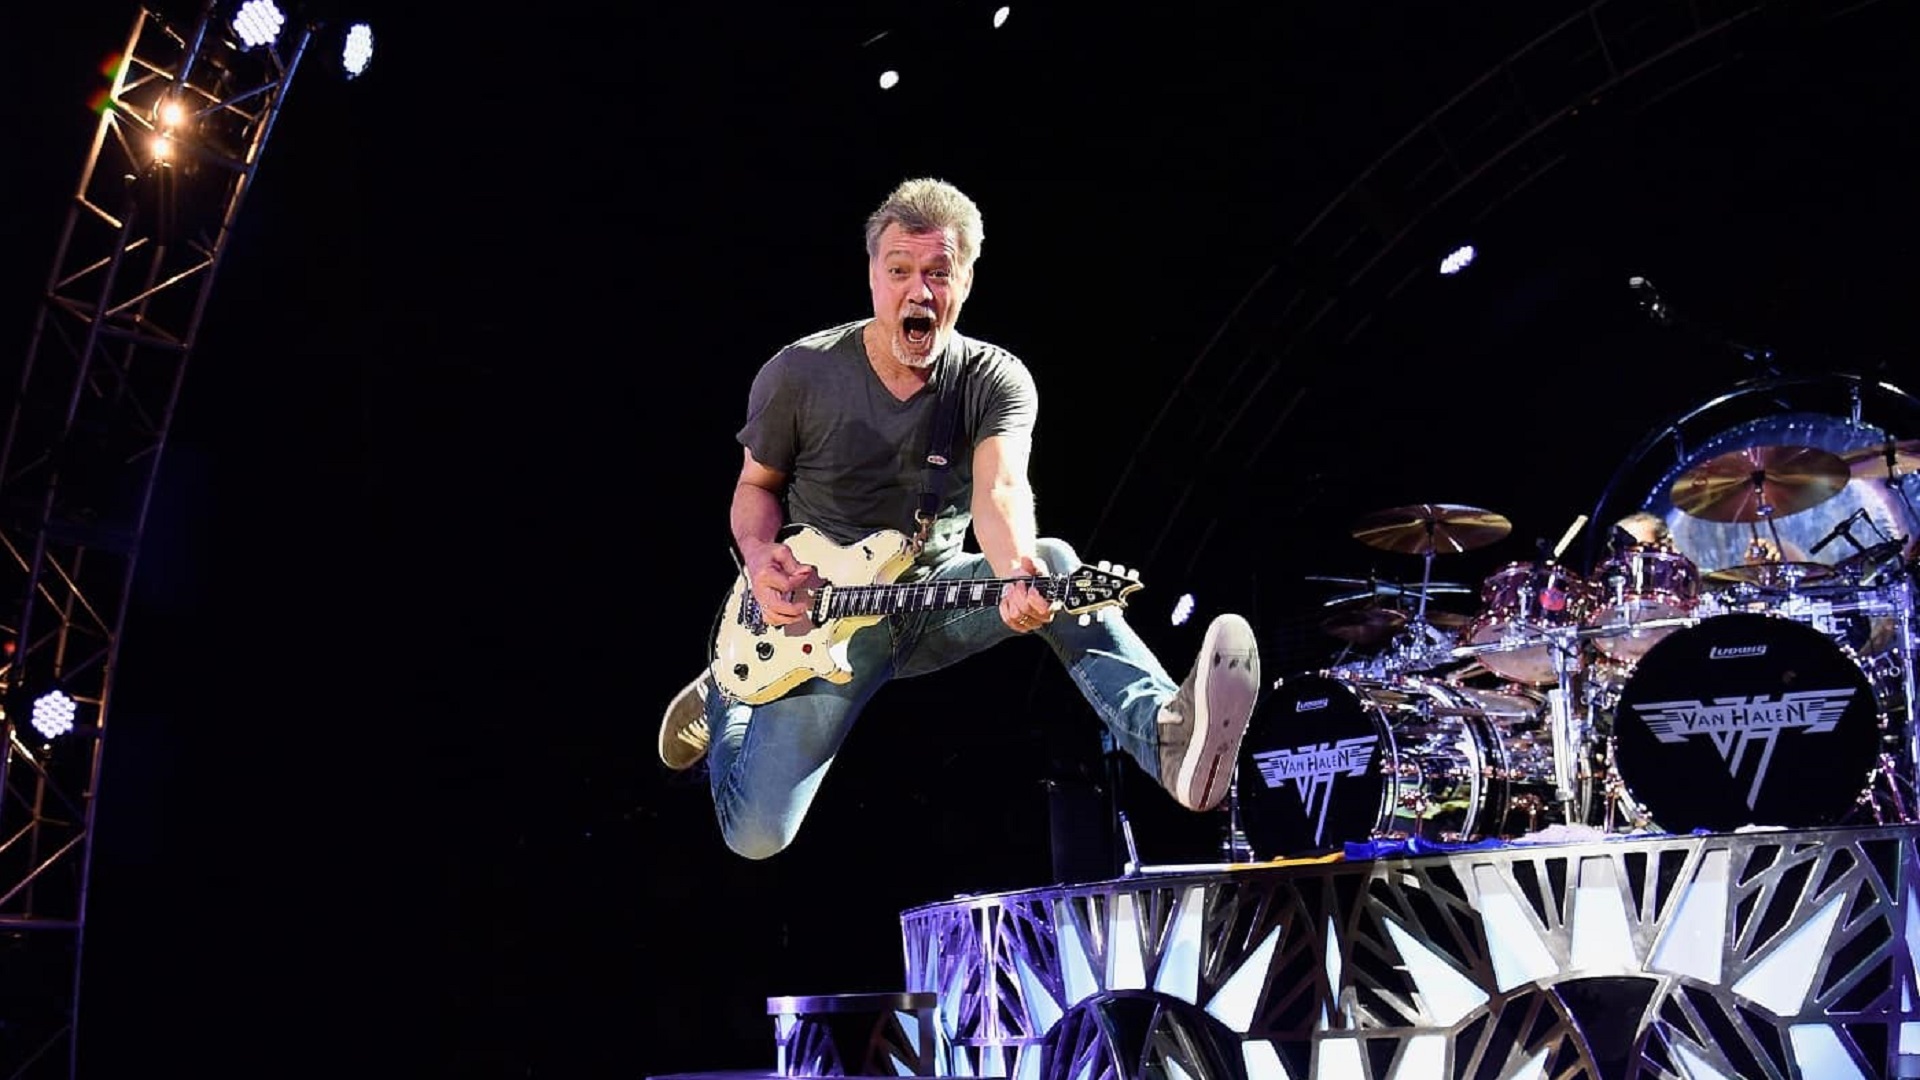 Las ventas de Van Halen crecen tras la muerte de Eddie